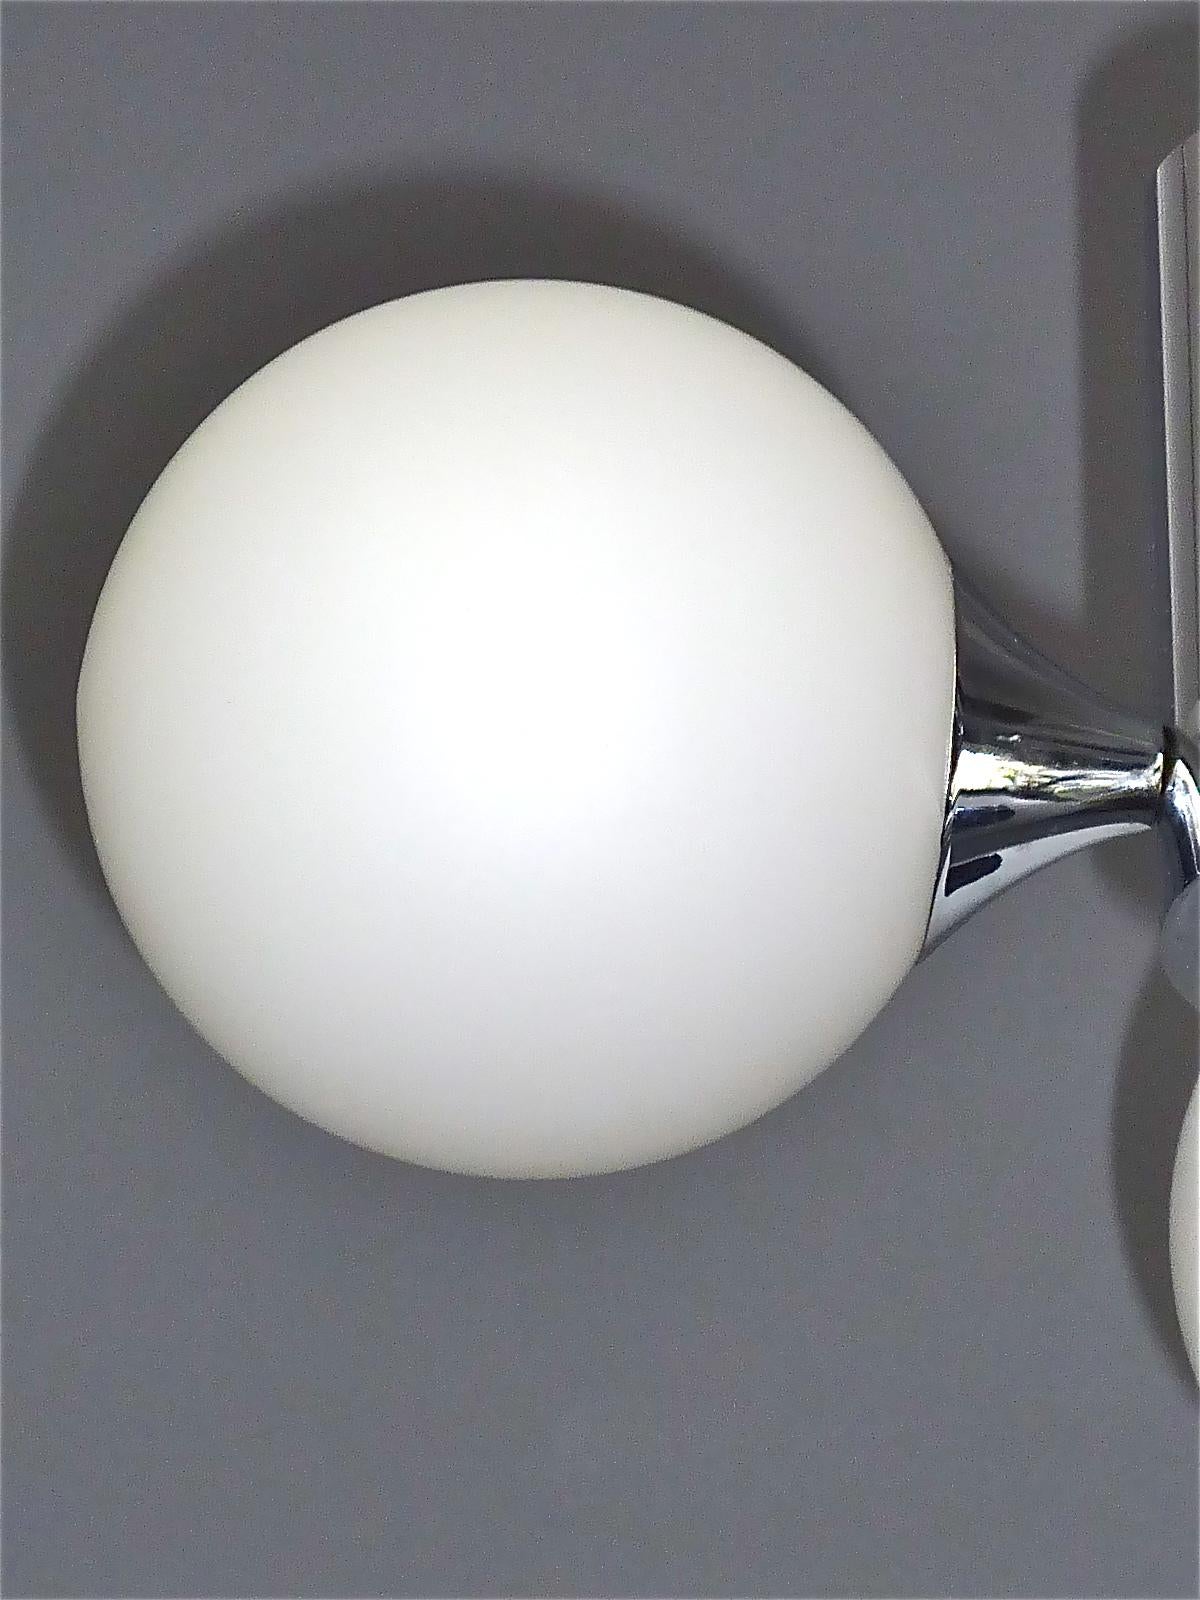 Mid-Century Modern 3 Light Kaiser Sputnik Flush Mount Lamp Chrome White Glass 1960 Stilnovo Style For Sale